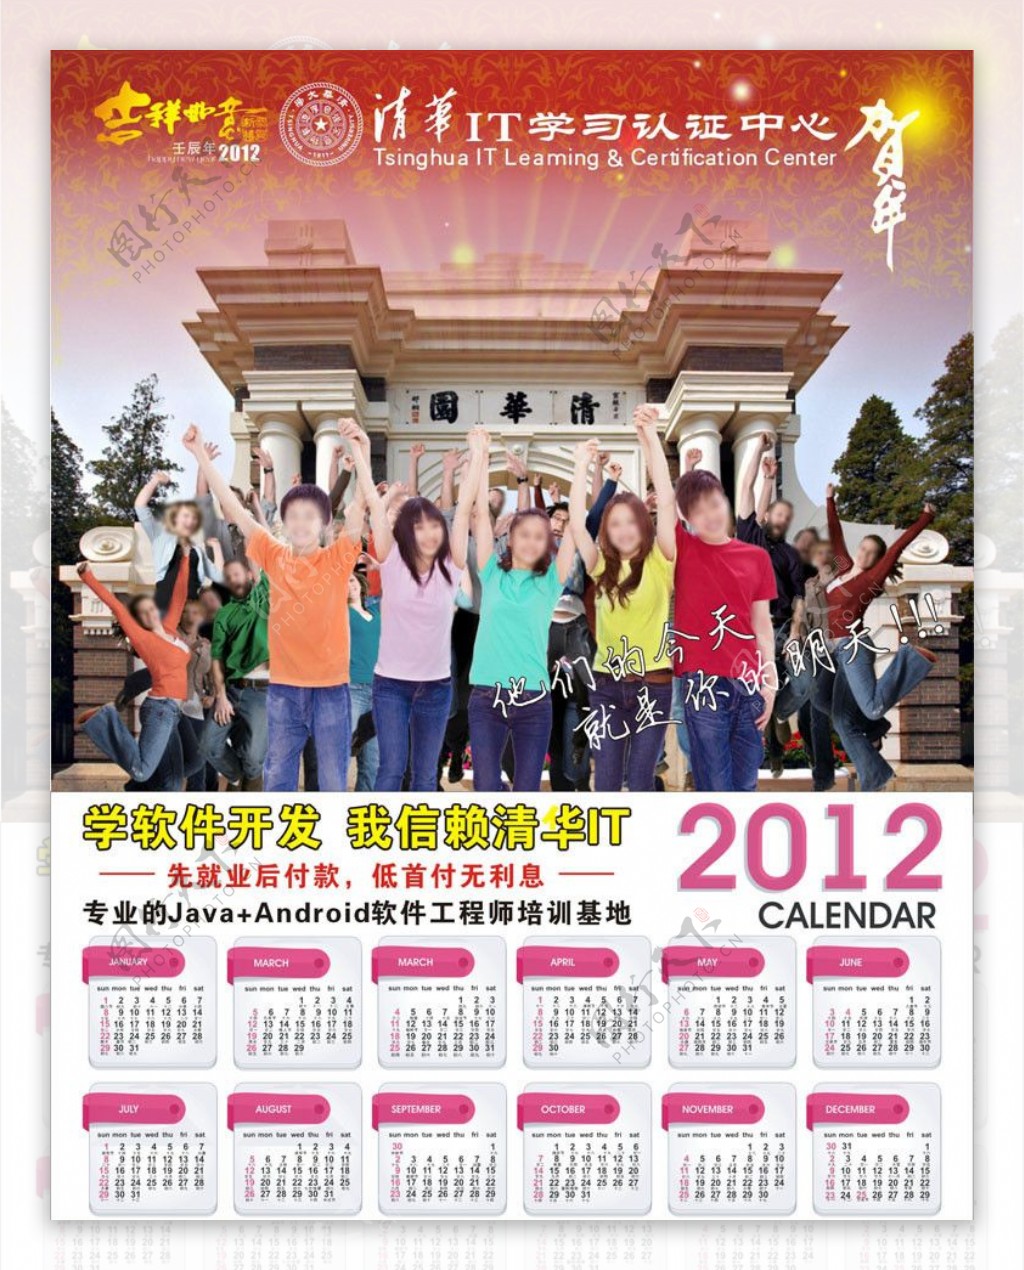 清华IT培训学校2012年年历海报图片